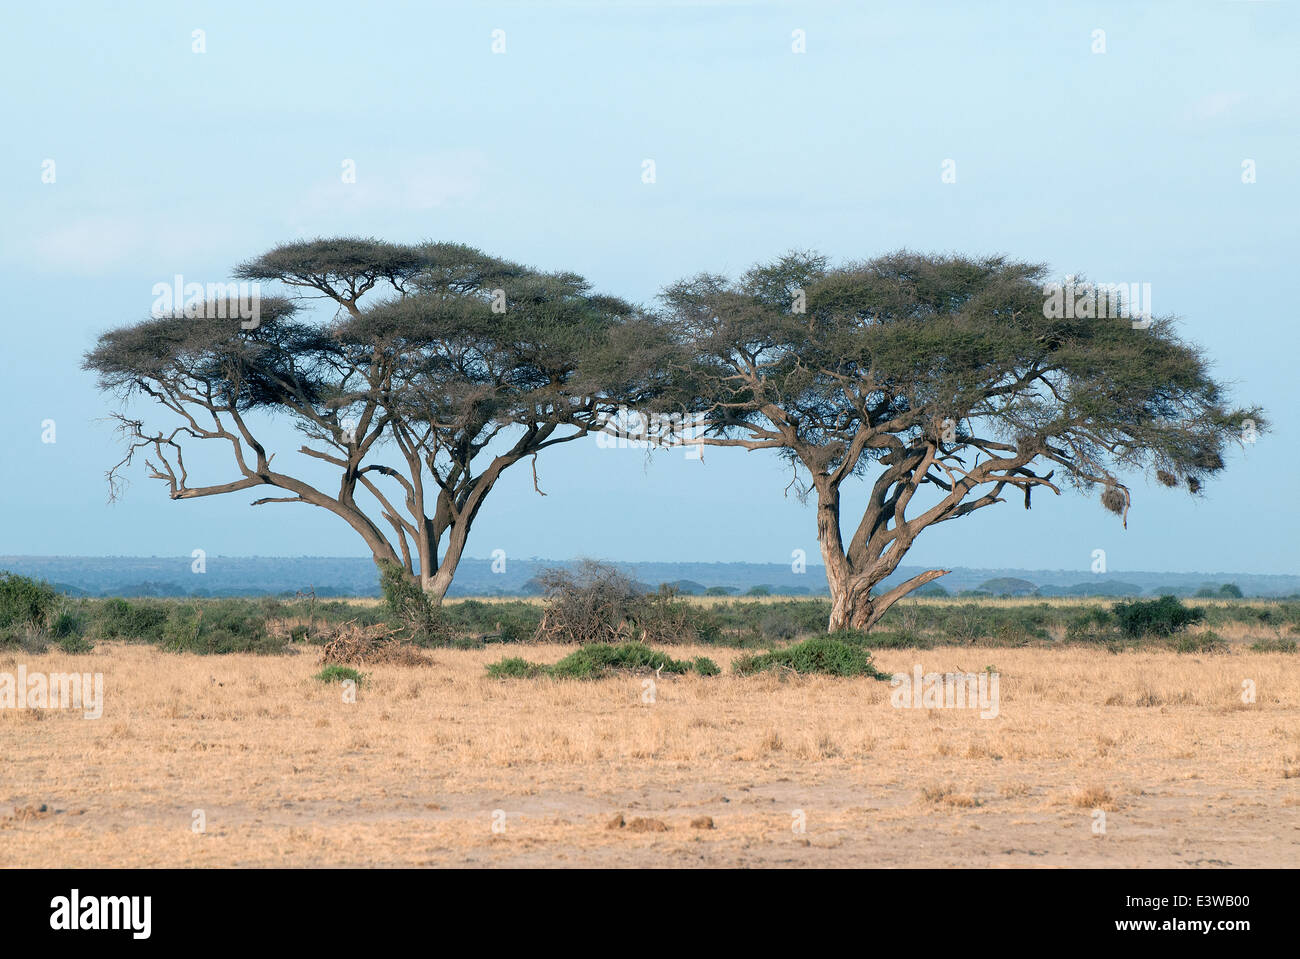 Deux arbres Acacia tortilis ou parapluie Thorn avec des signes de dommages causés par les éléphants dans le Parc national Amboseli au Kenya Banque D'Images